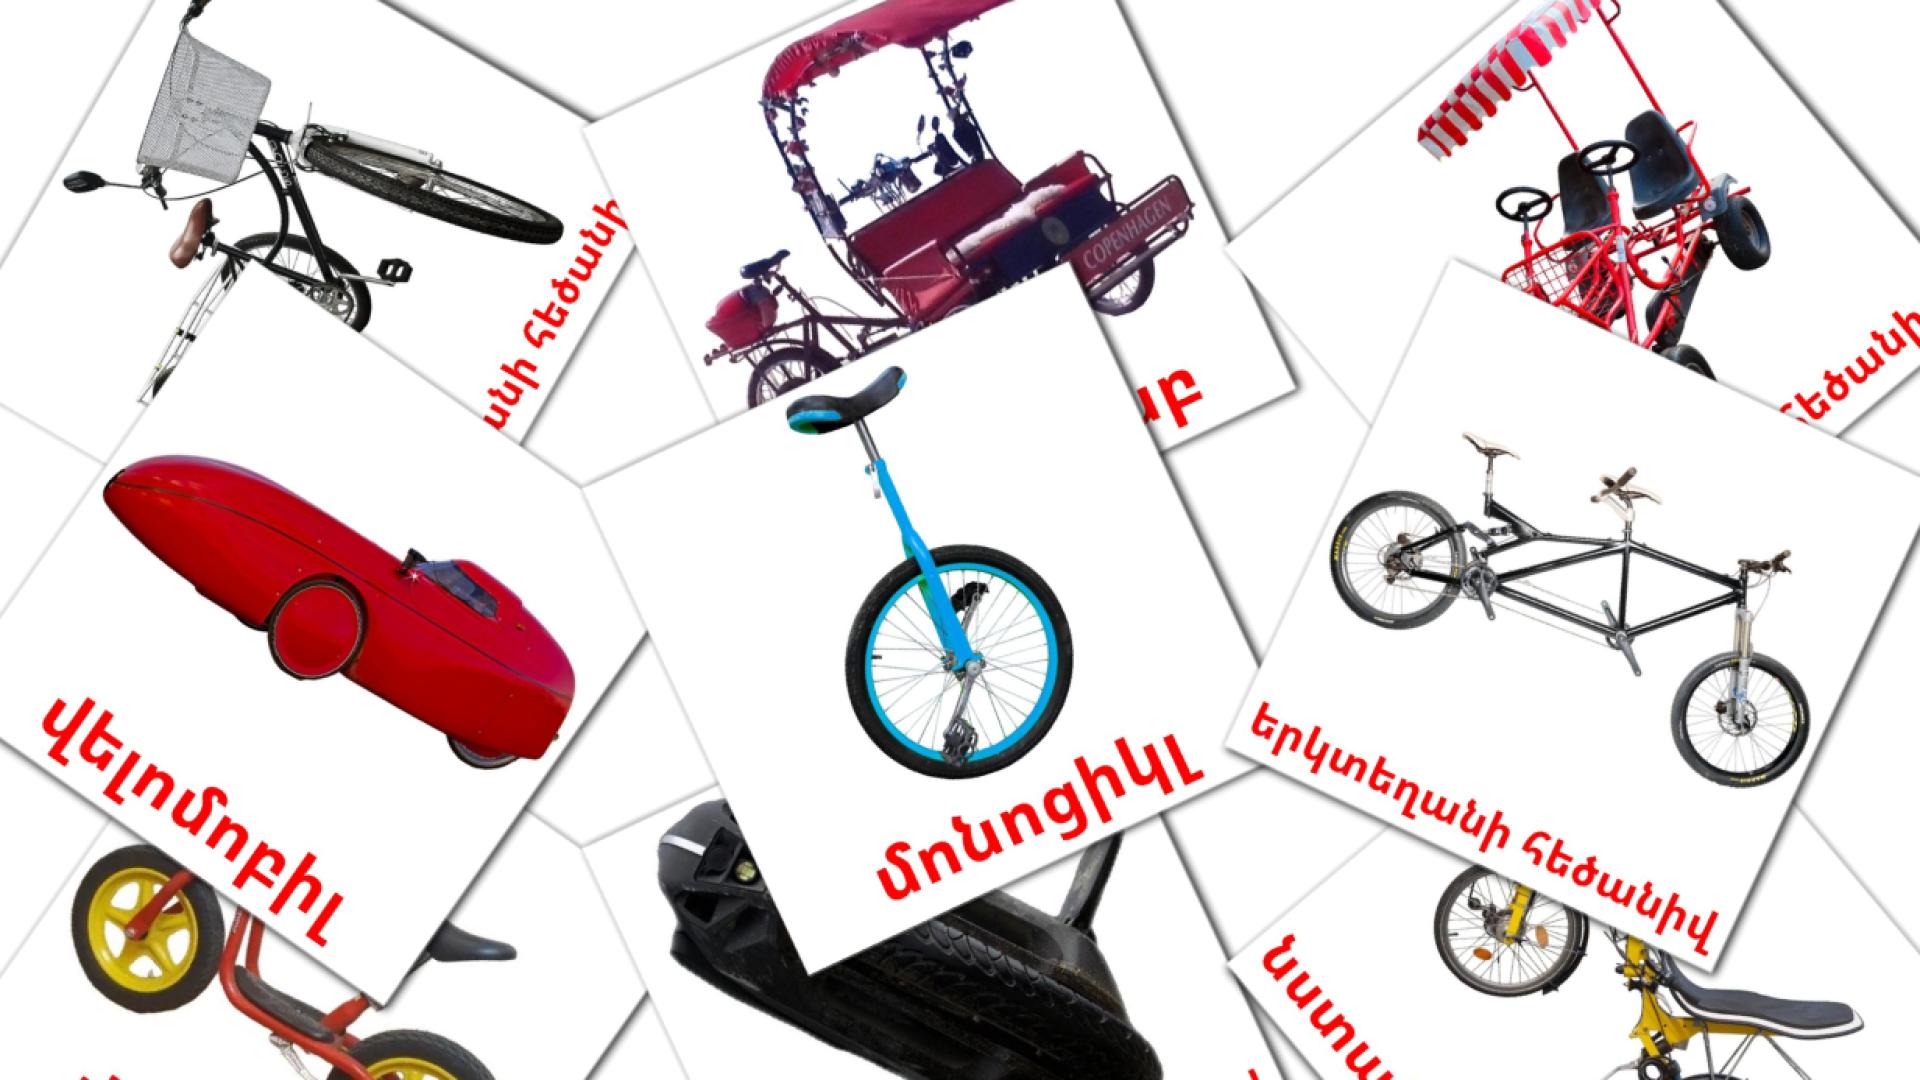 Trasporto di biciclette - Schede di vocabolario armeno